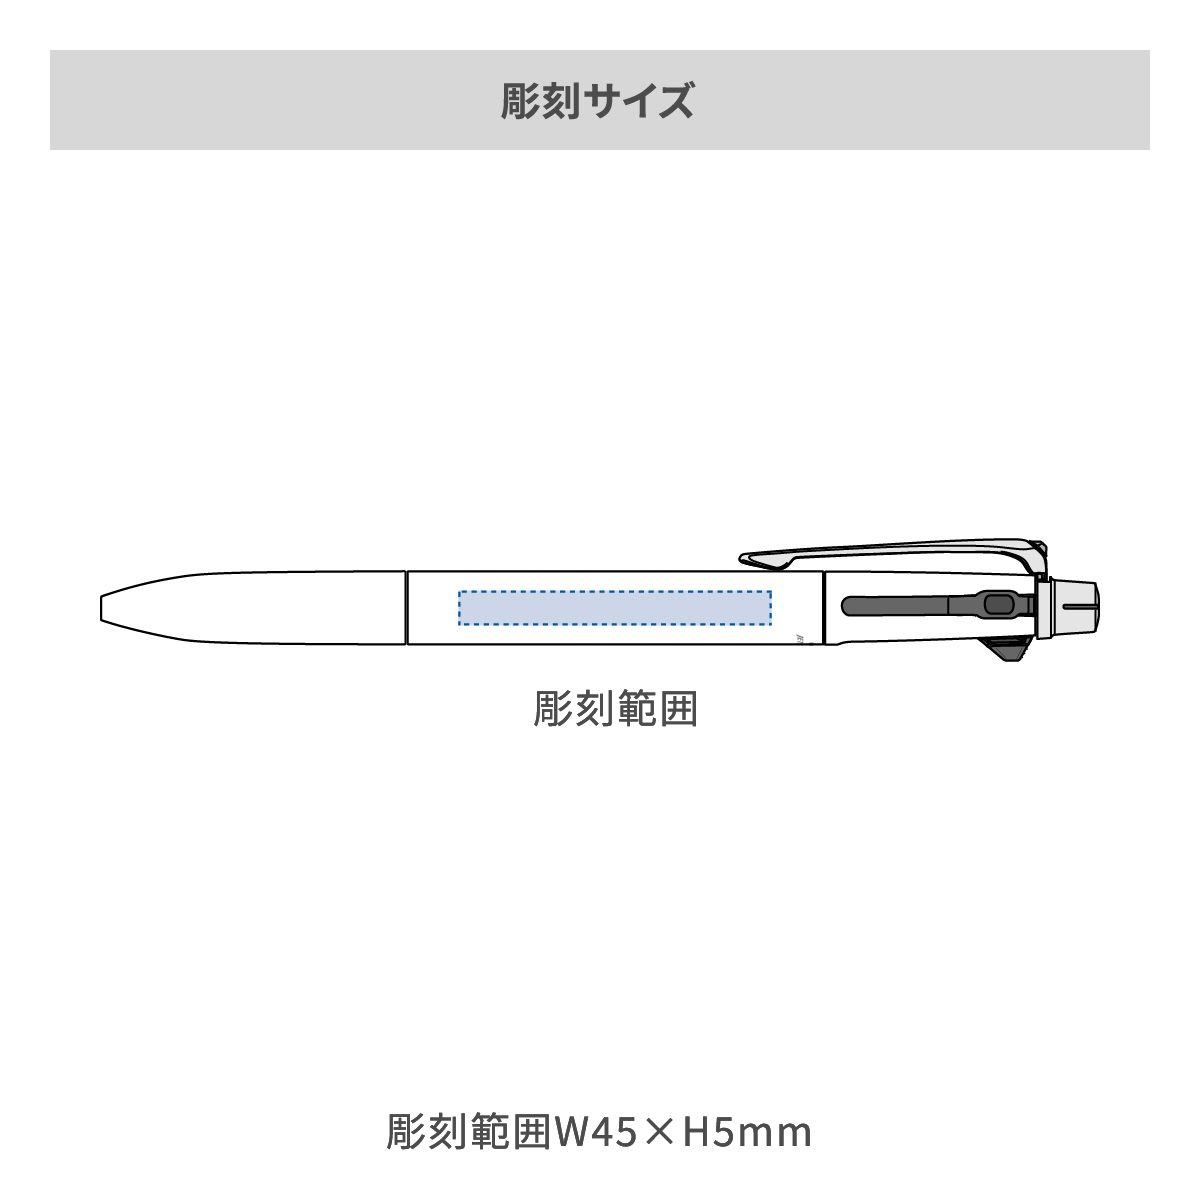 【短納期】三菱鉛筆 ジェットストリーム プライム 多機能ペン 2&1 0.5mmの名入れ範囲